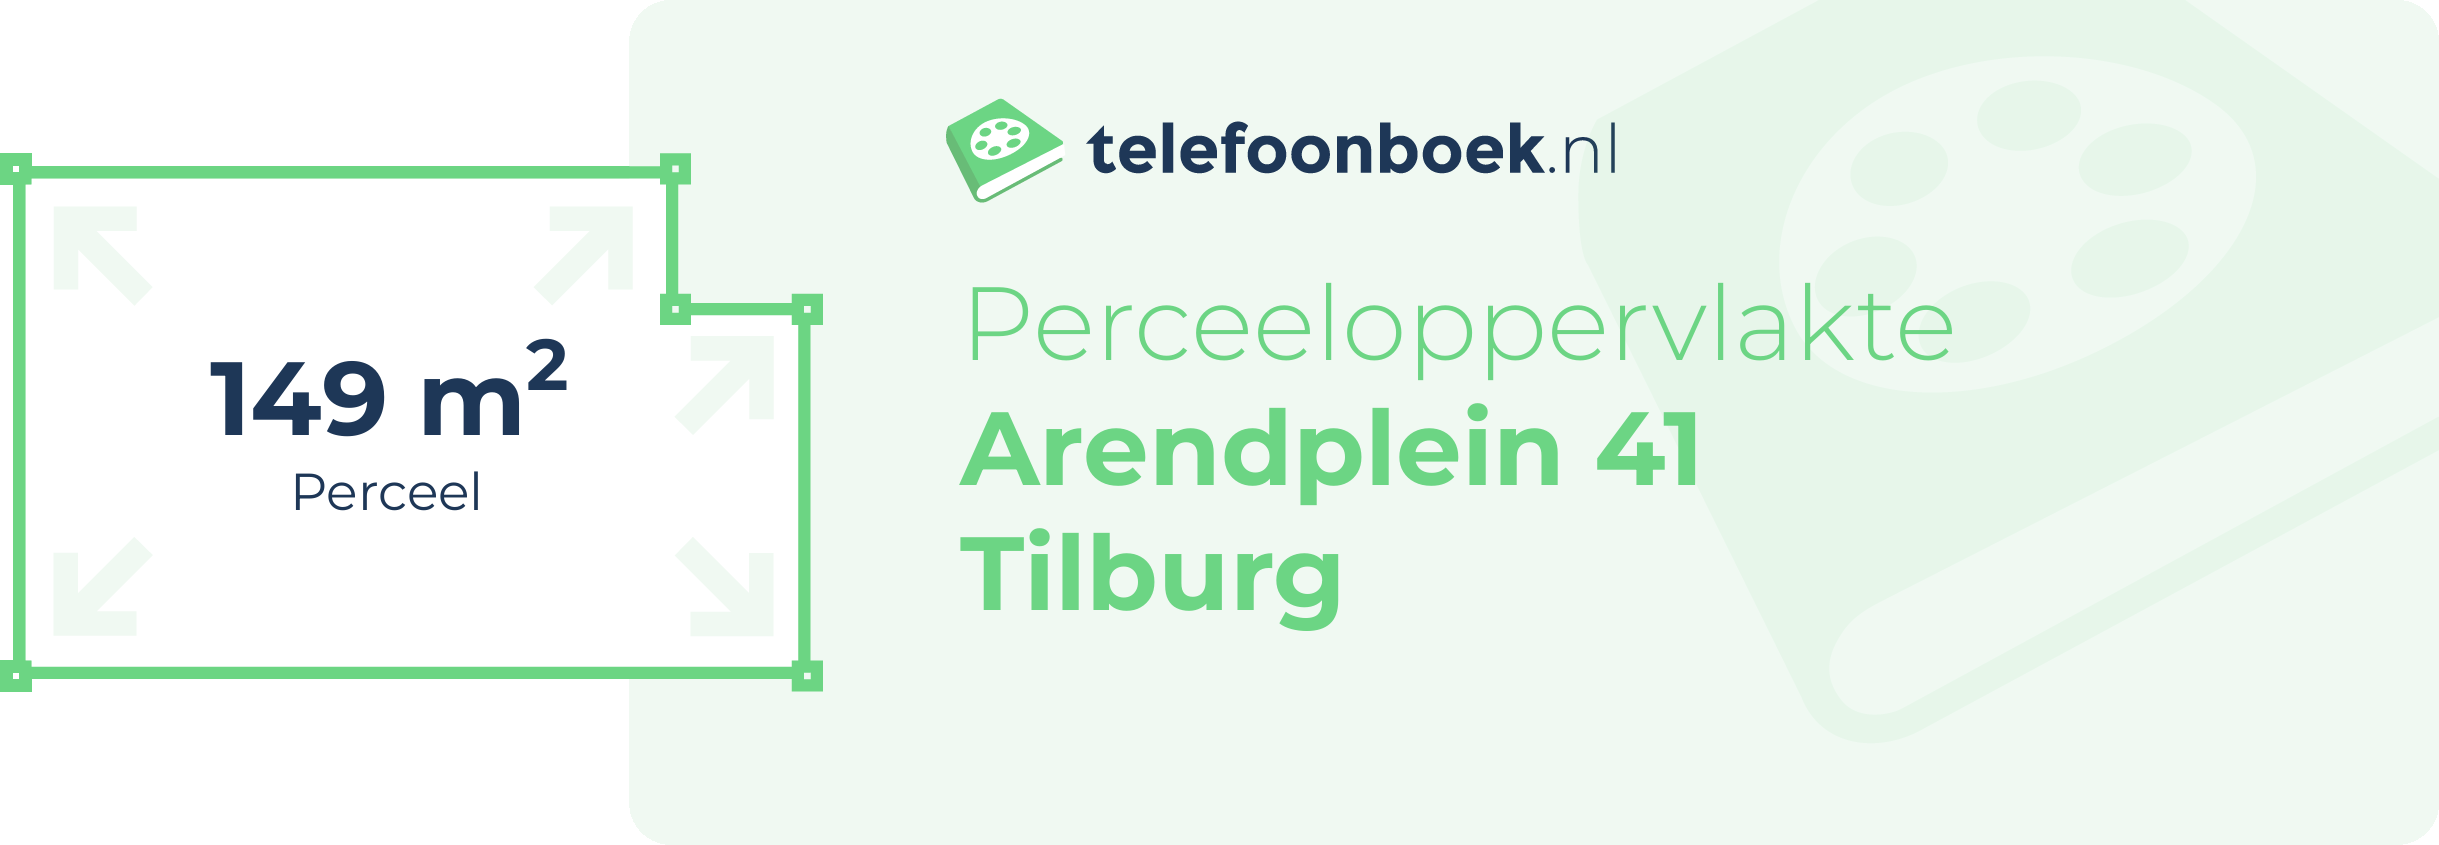 Perceeloppervlakte Arendplein 41 Tilburg